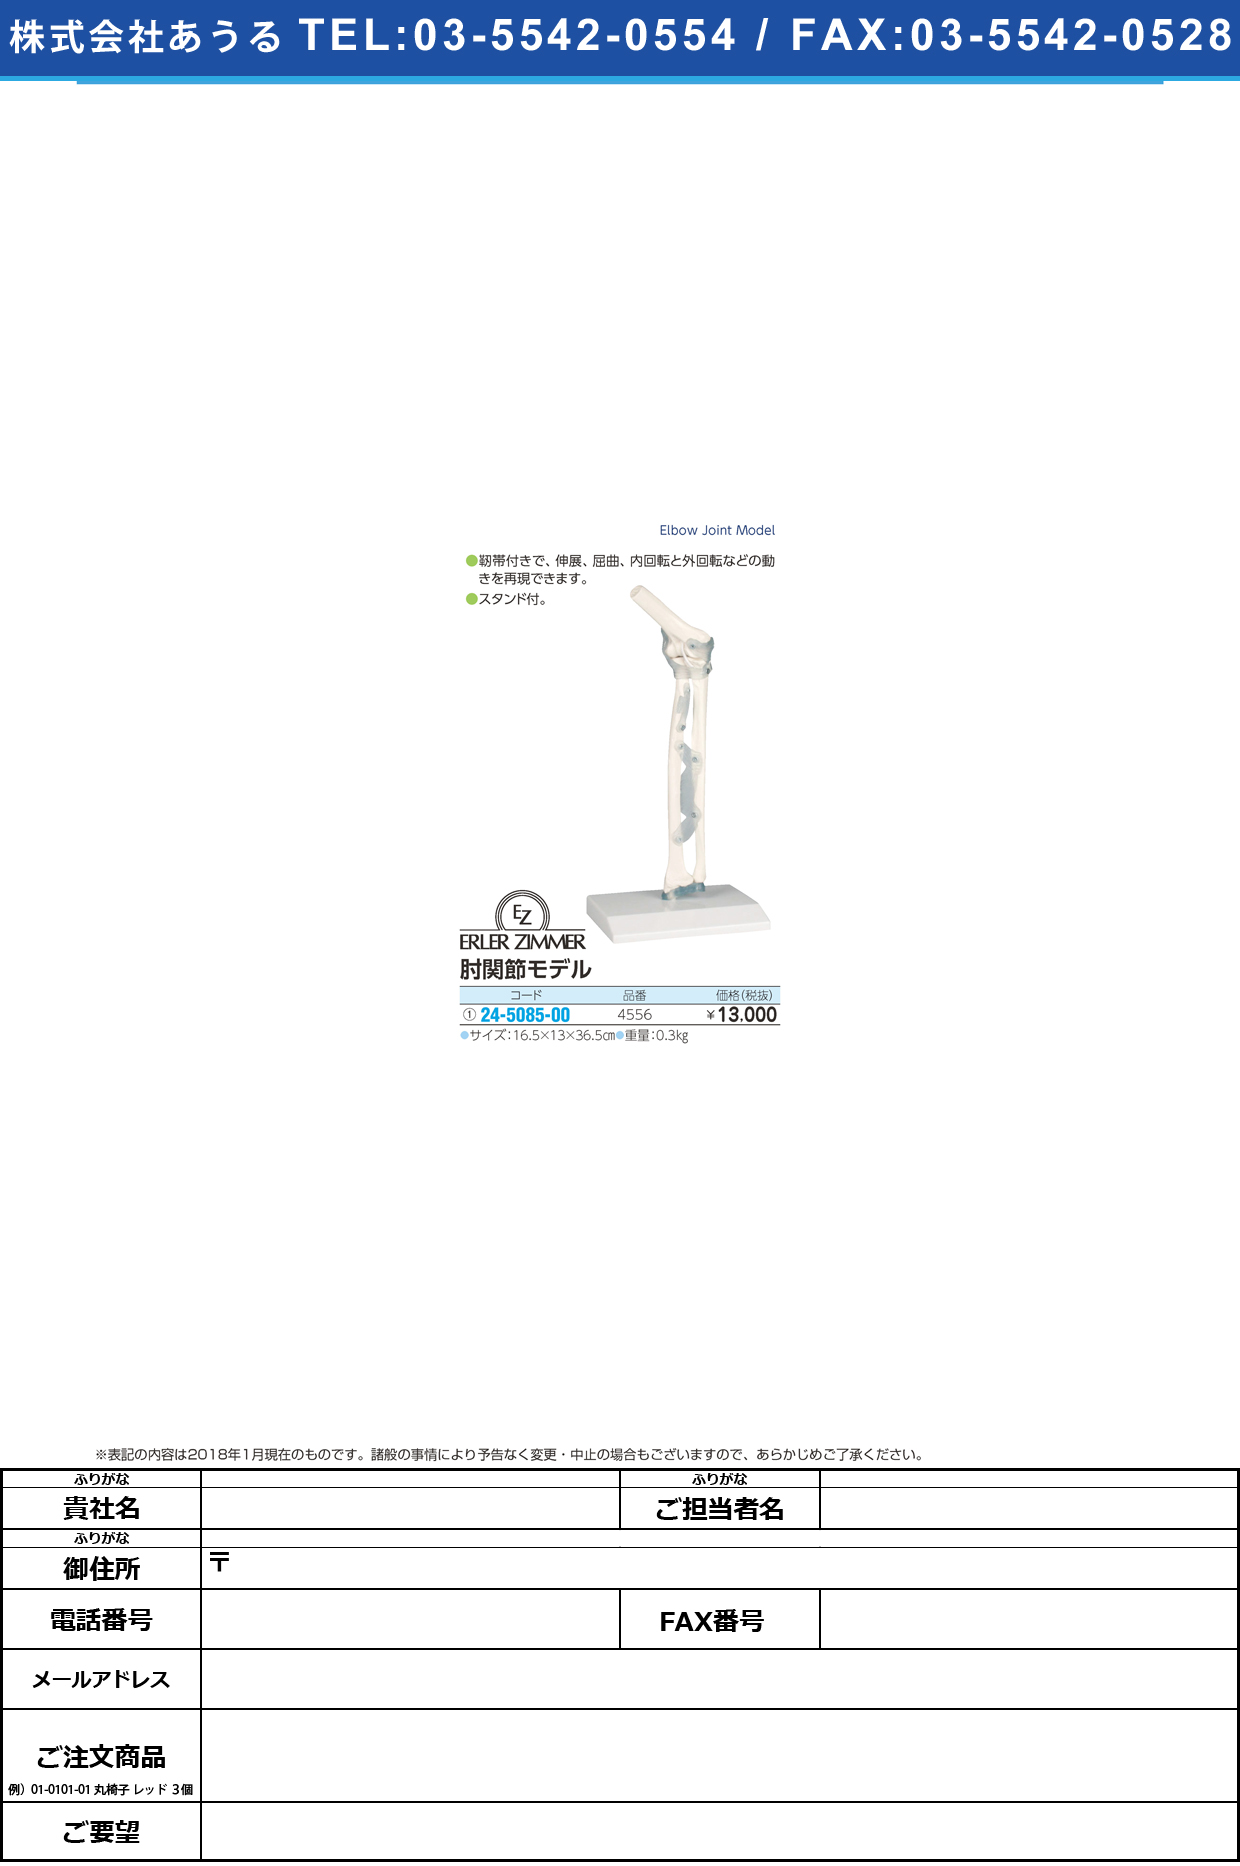 (24-5085-00)肘関節モデル 4556 ﾋｼﾞｶﾝｾﾂﾓﾃﾞﾙ(エルラージーマー社)【1個単位】【2019年カタログ商品】